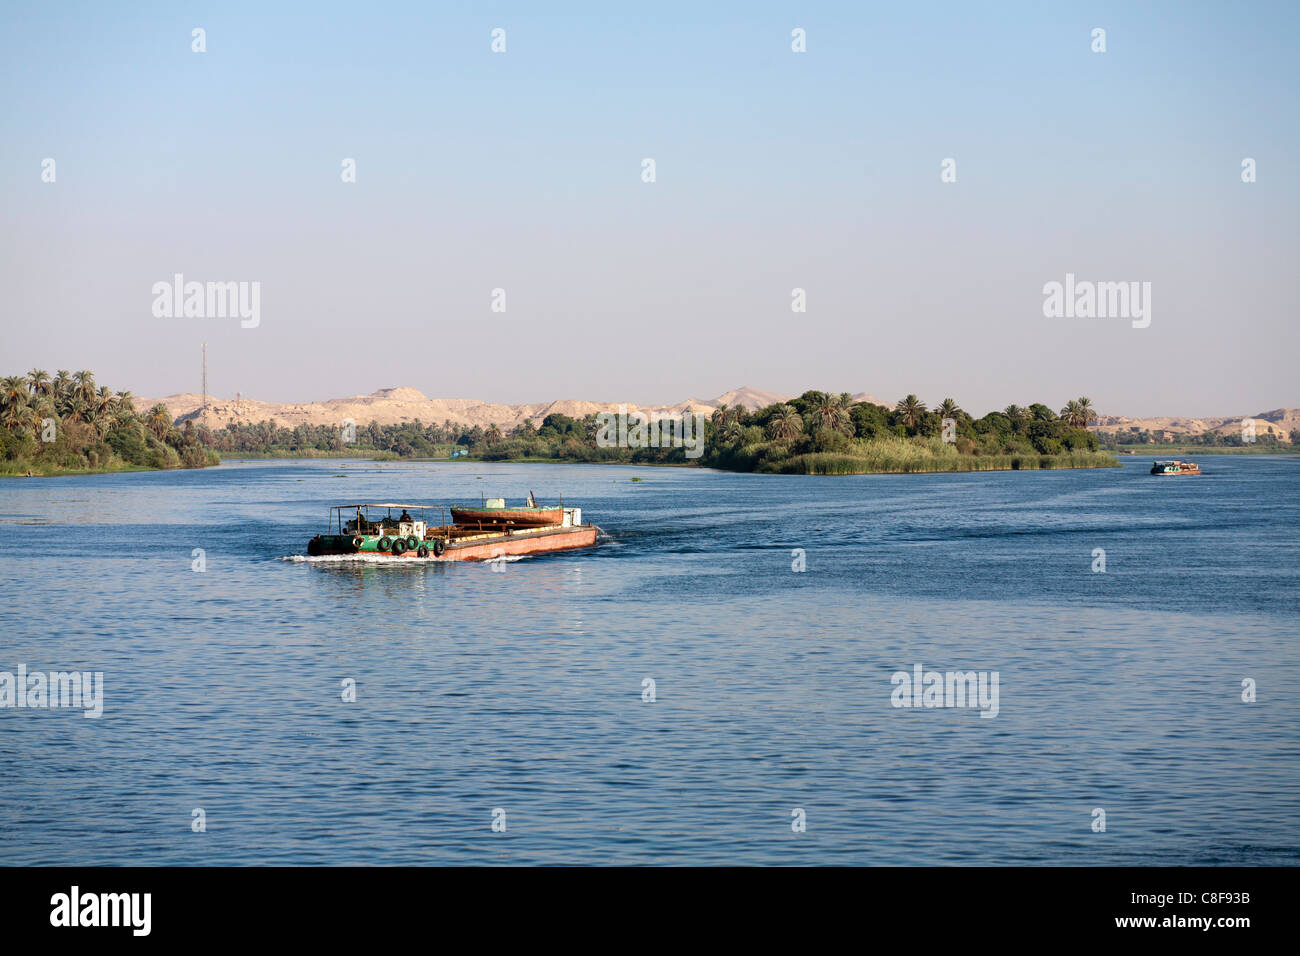 Einem breiten Abschnitt des Nil mit Schlepper Boot segeln niedrig im Wasser Weg von der Kamera mit entfernten Wüstenberge, Ägypten Stockfoto